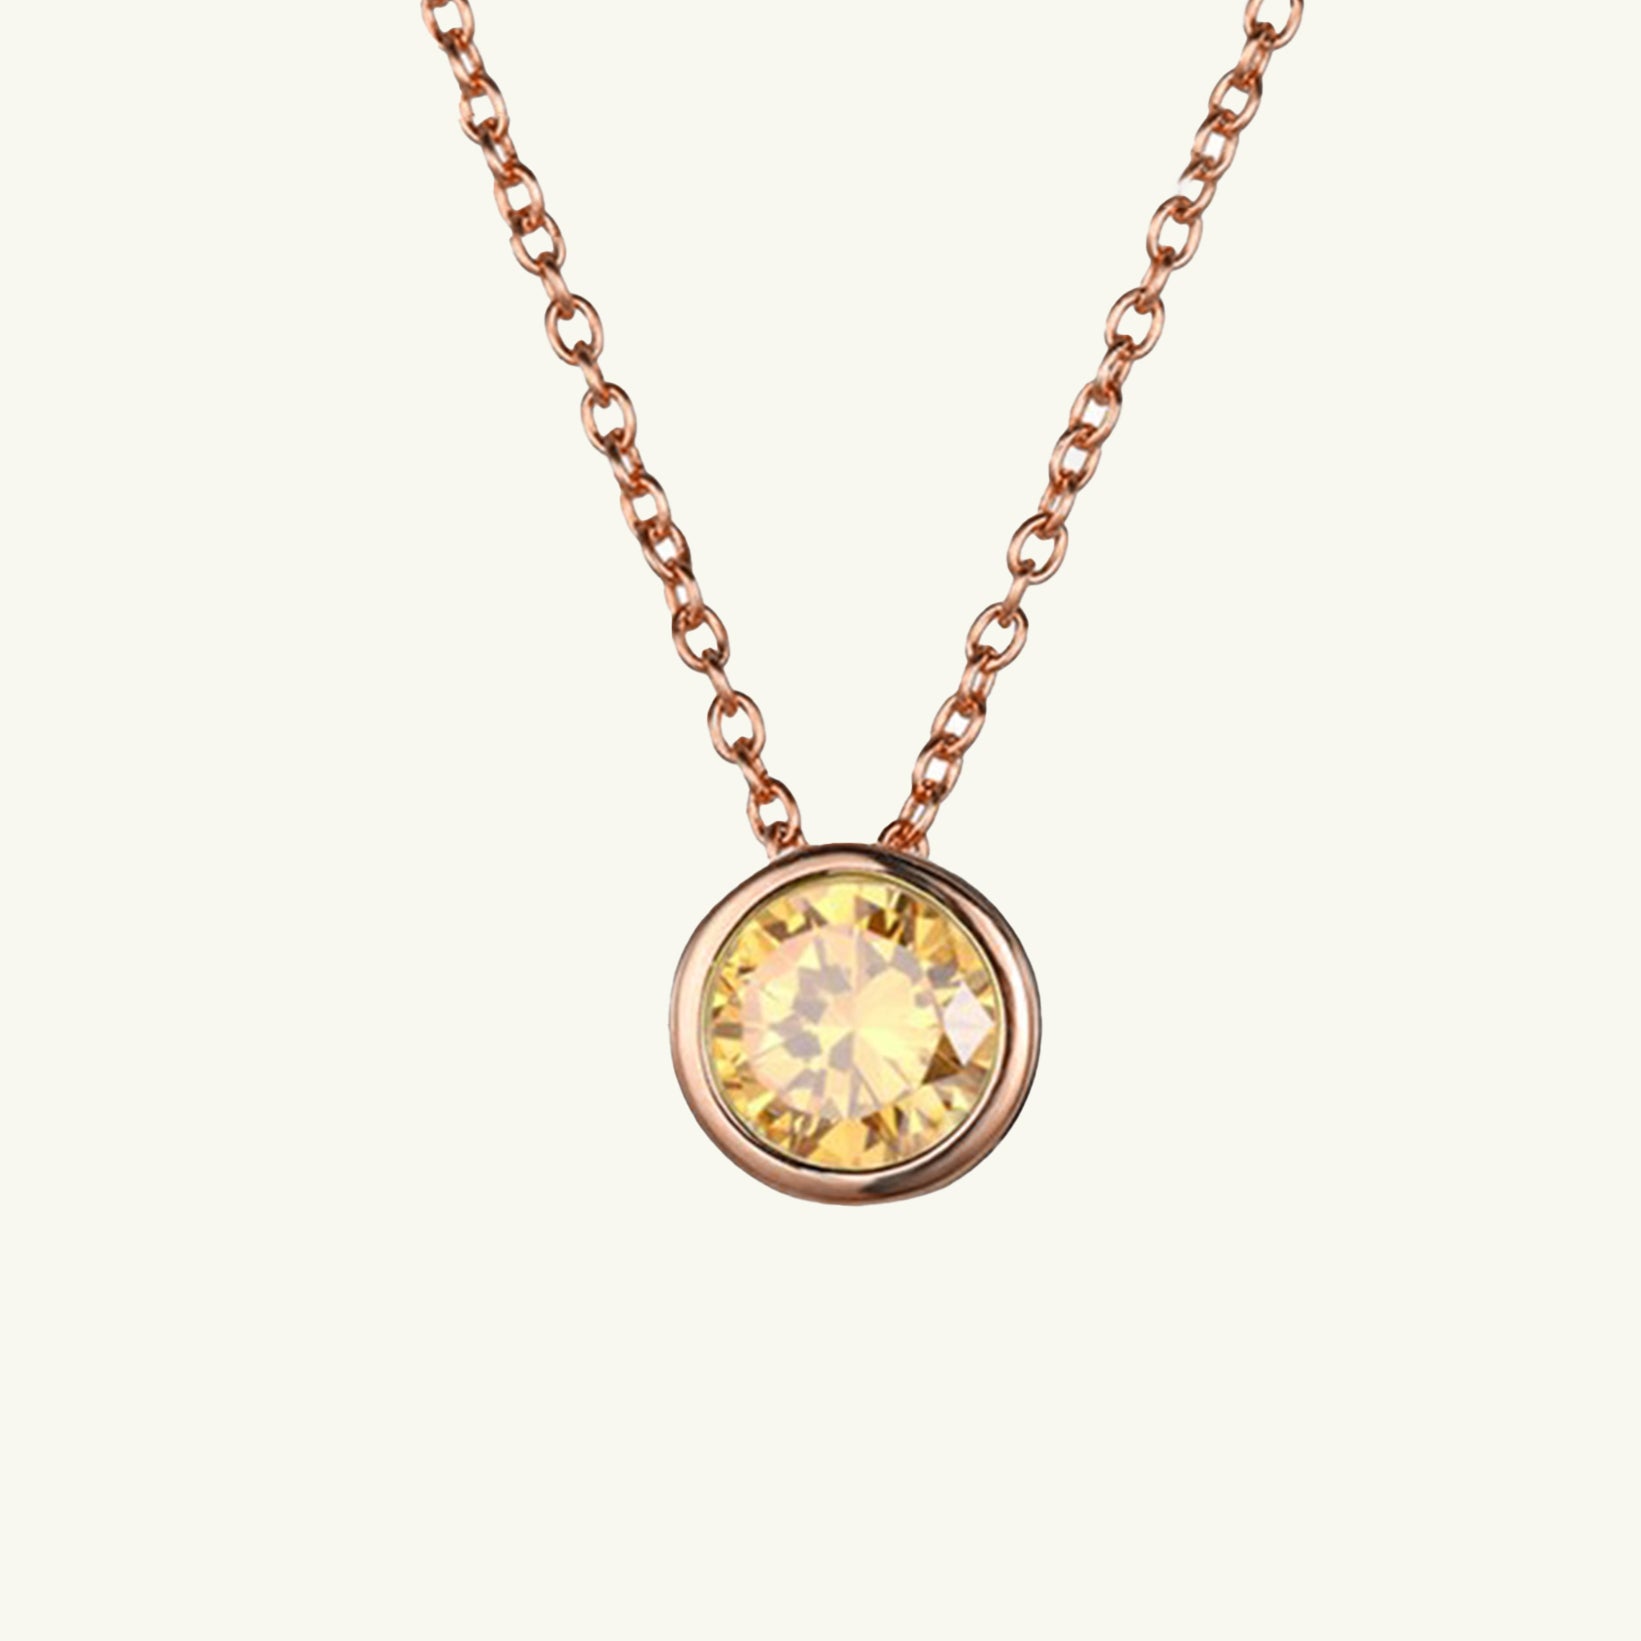 Birthstone Charm Necklace - Wrenlee